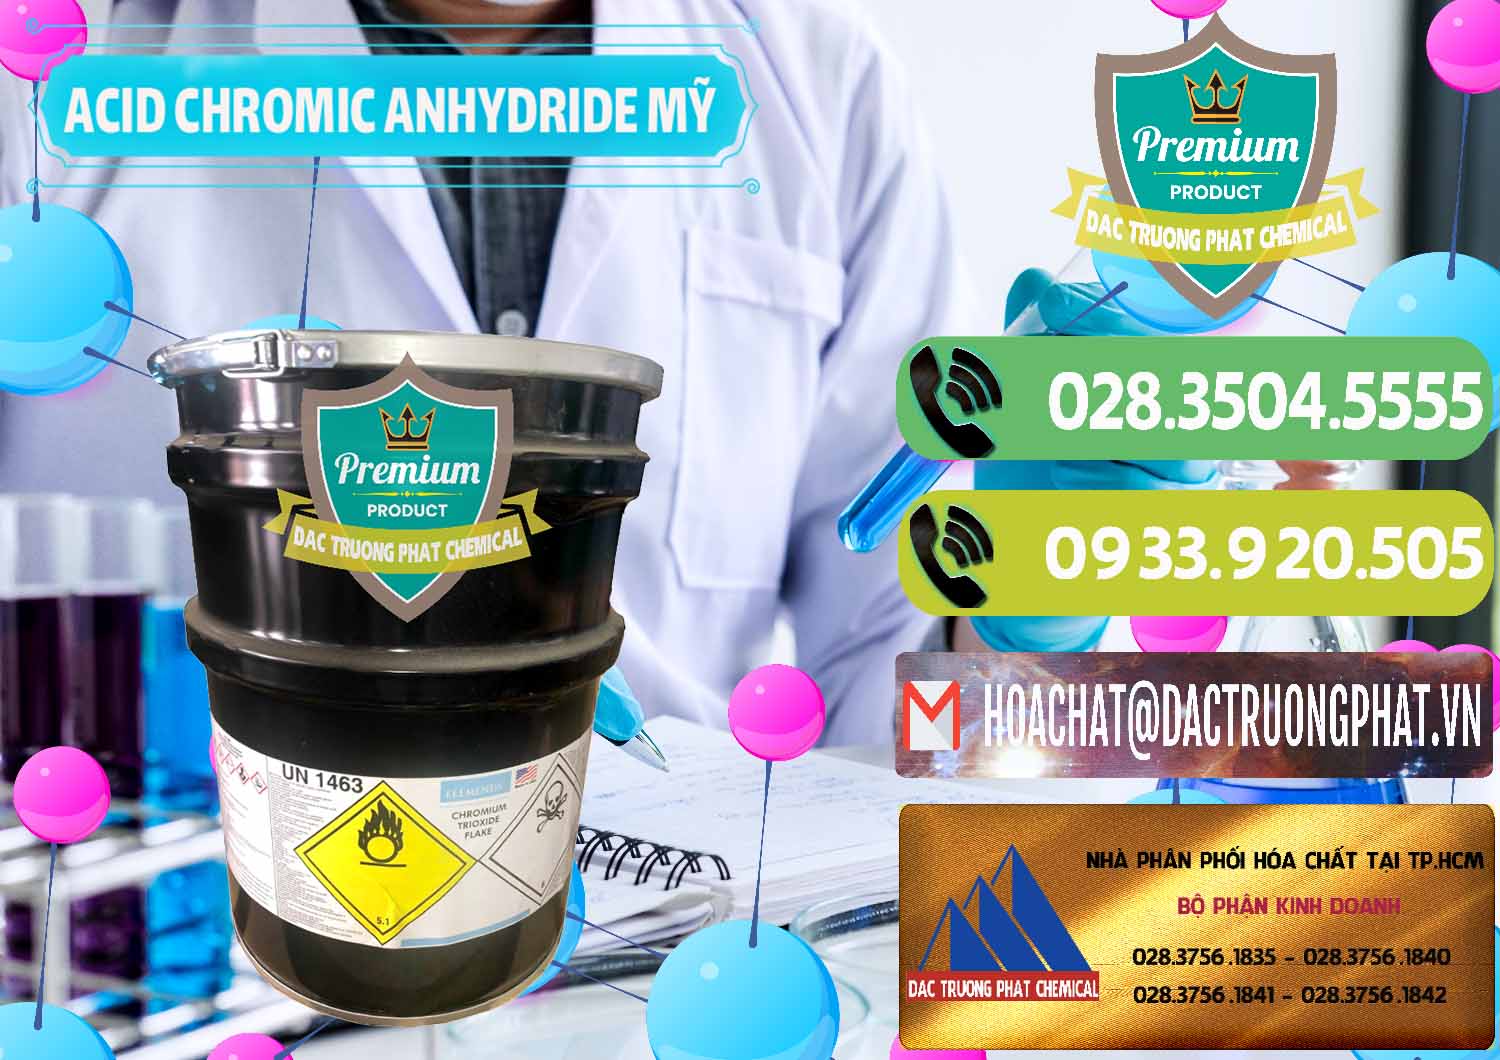 Công ty bán _ cung cấp Acid Chromic Anhydride - Cromic CRO3 USA Mỹ - 0364 - Công ty bán & cung cấp hóa chất tại TP.HCM - hoachatmientay.vn